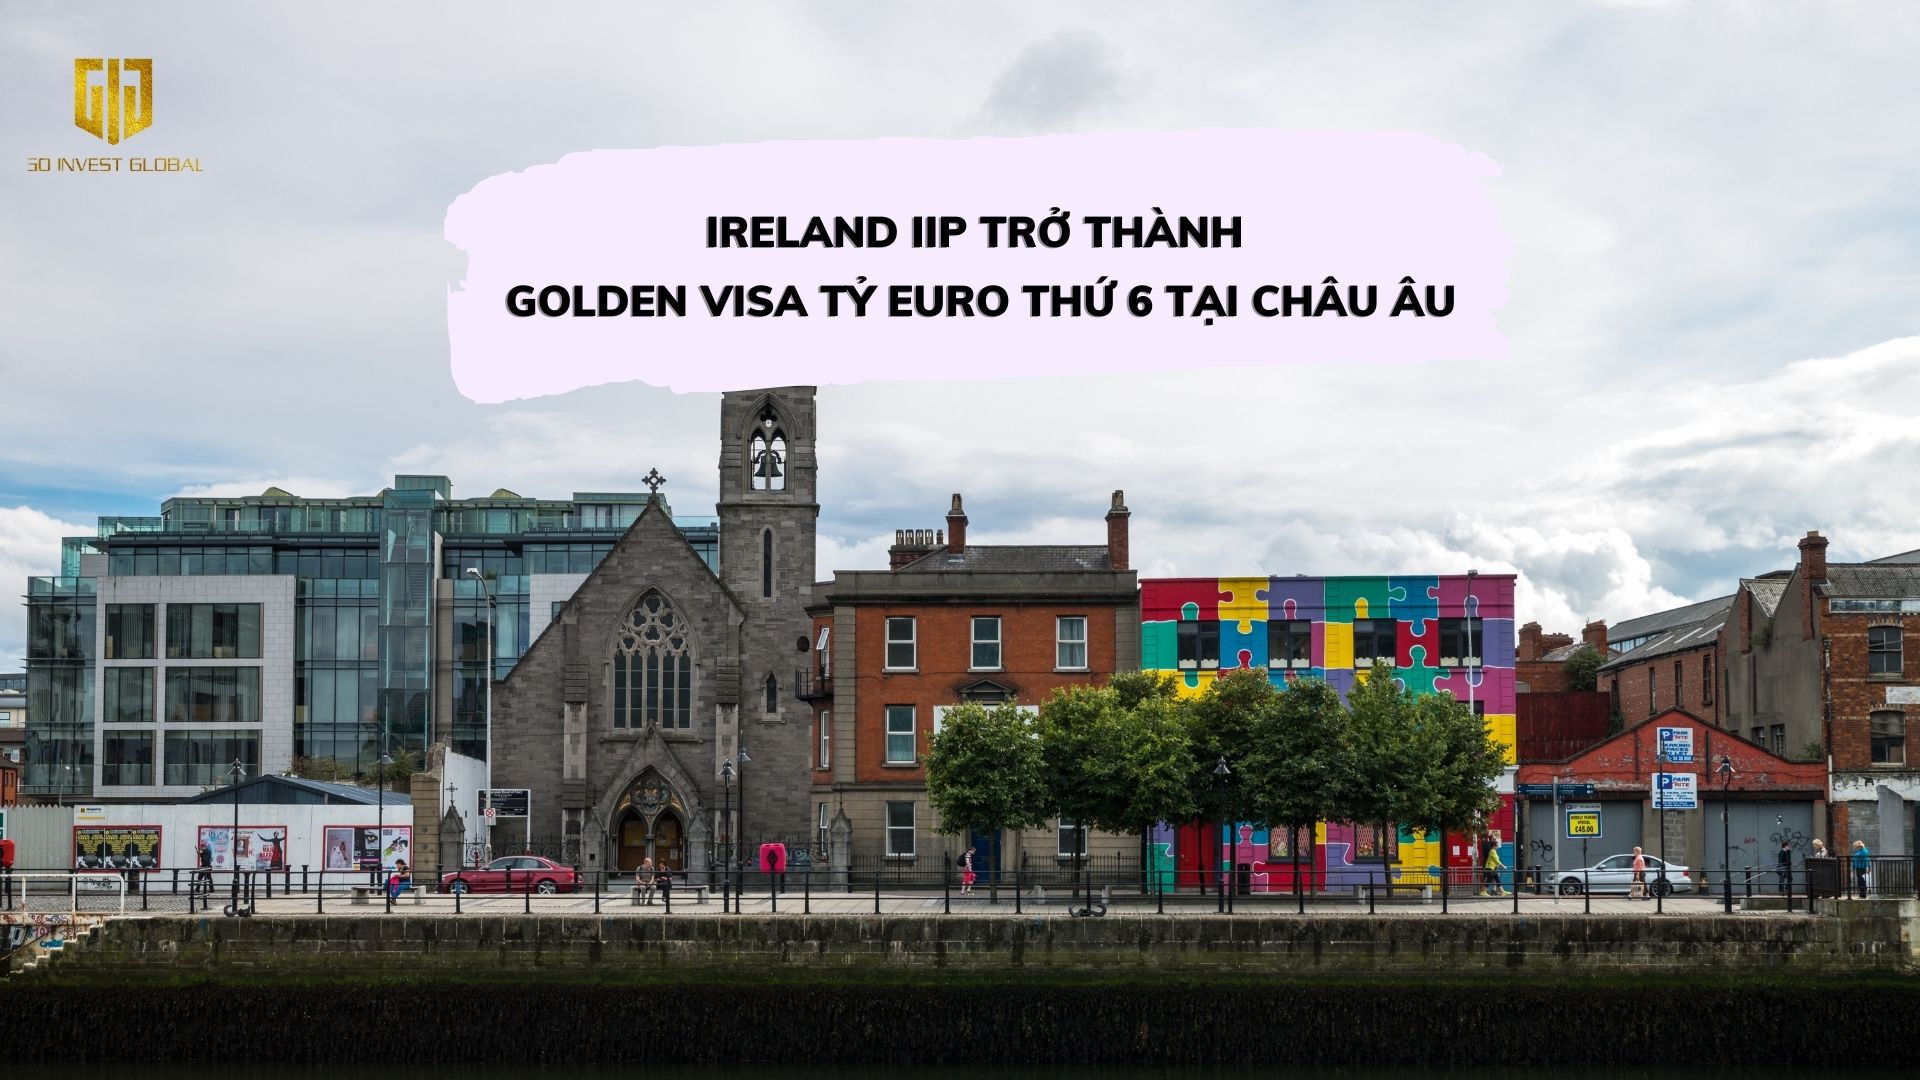 Ireland IIP trở thành Golden Visa tỷ euro thứ 6 tại châu Âu